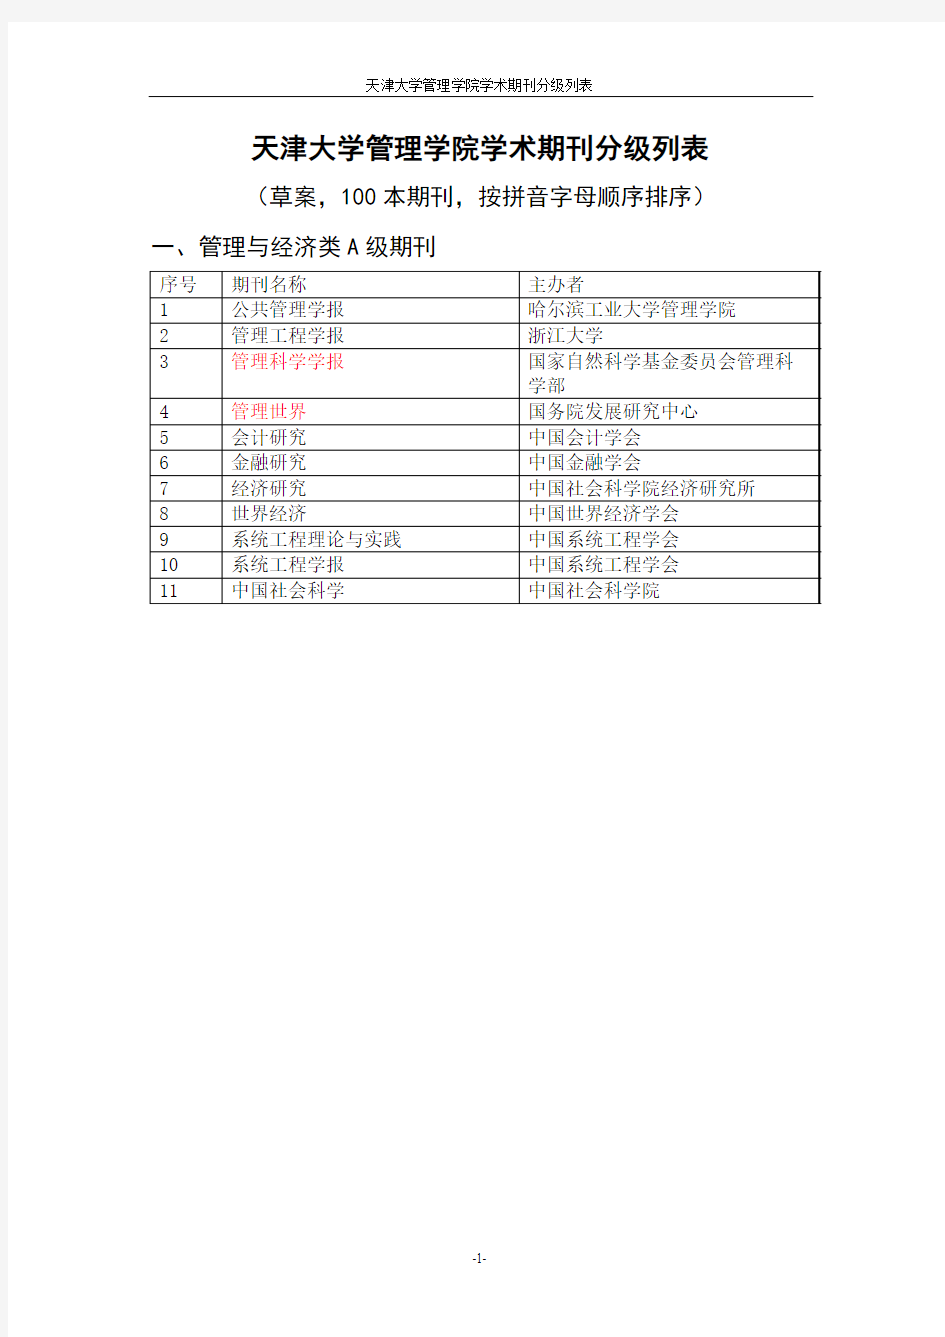 天津大学管理学院期刊分级列表(修改后)